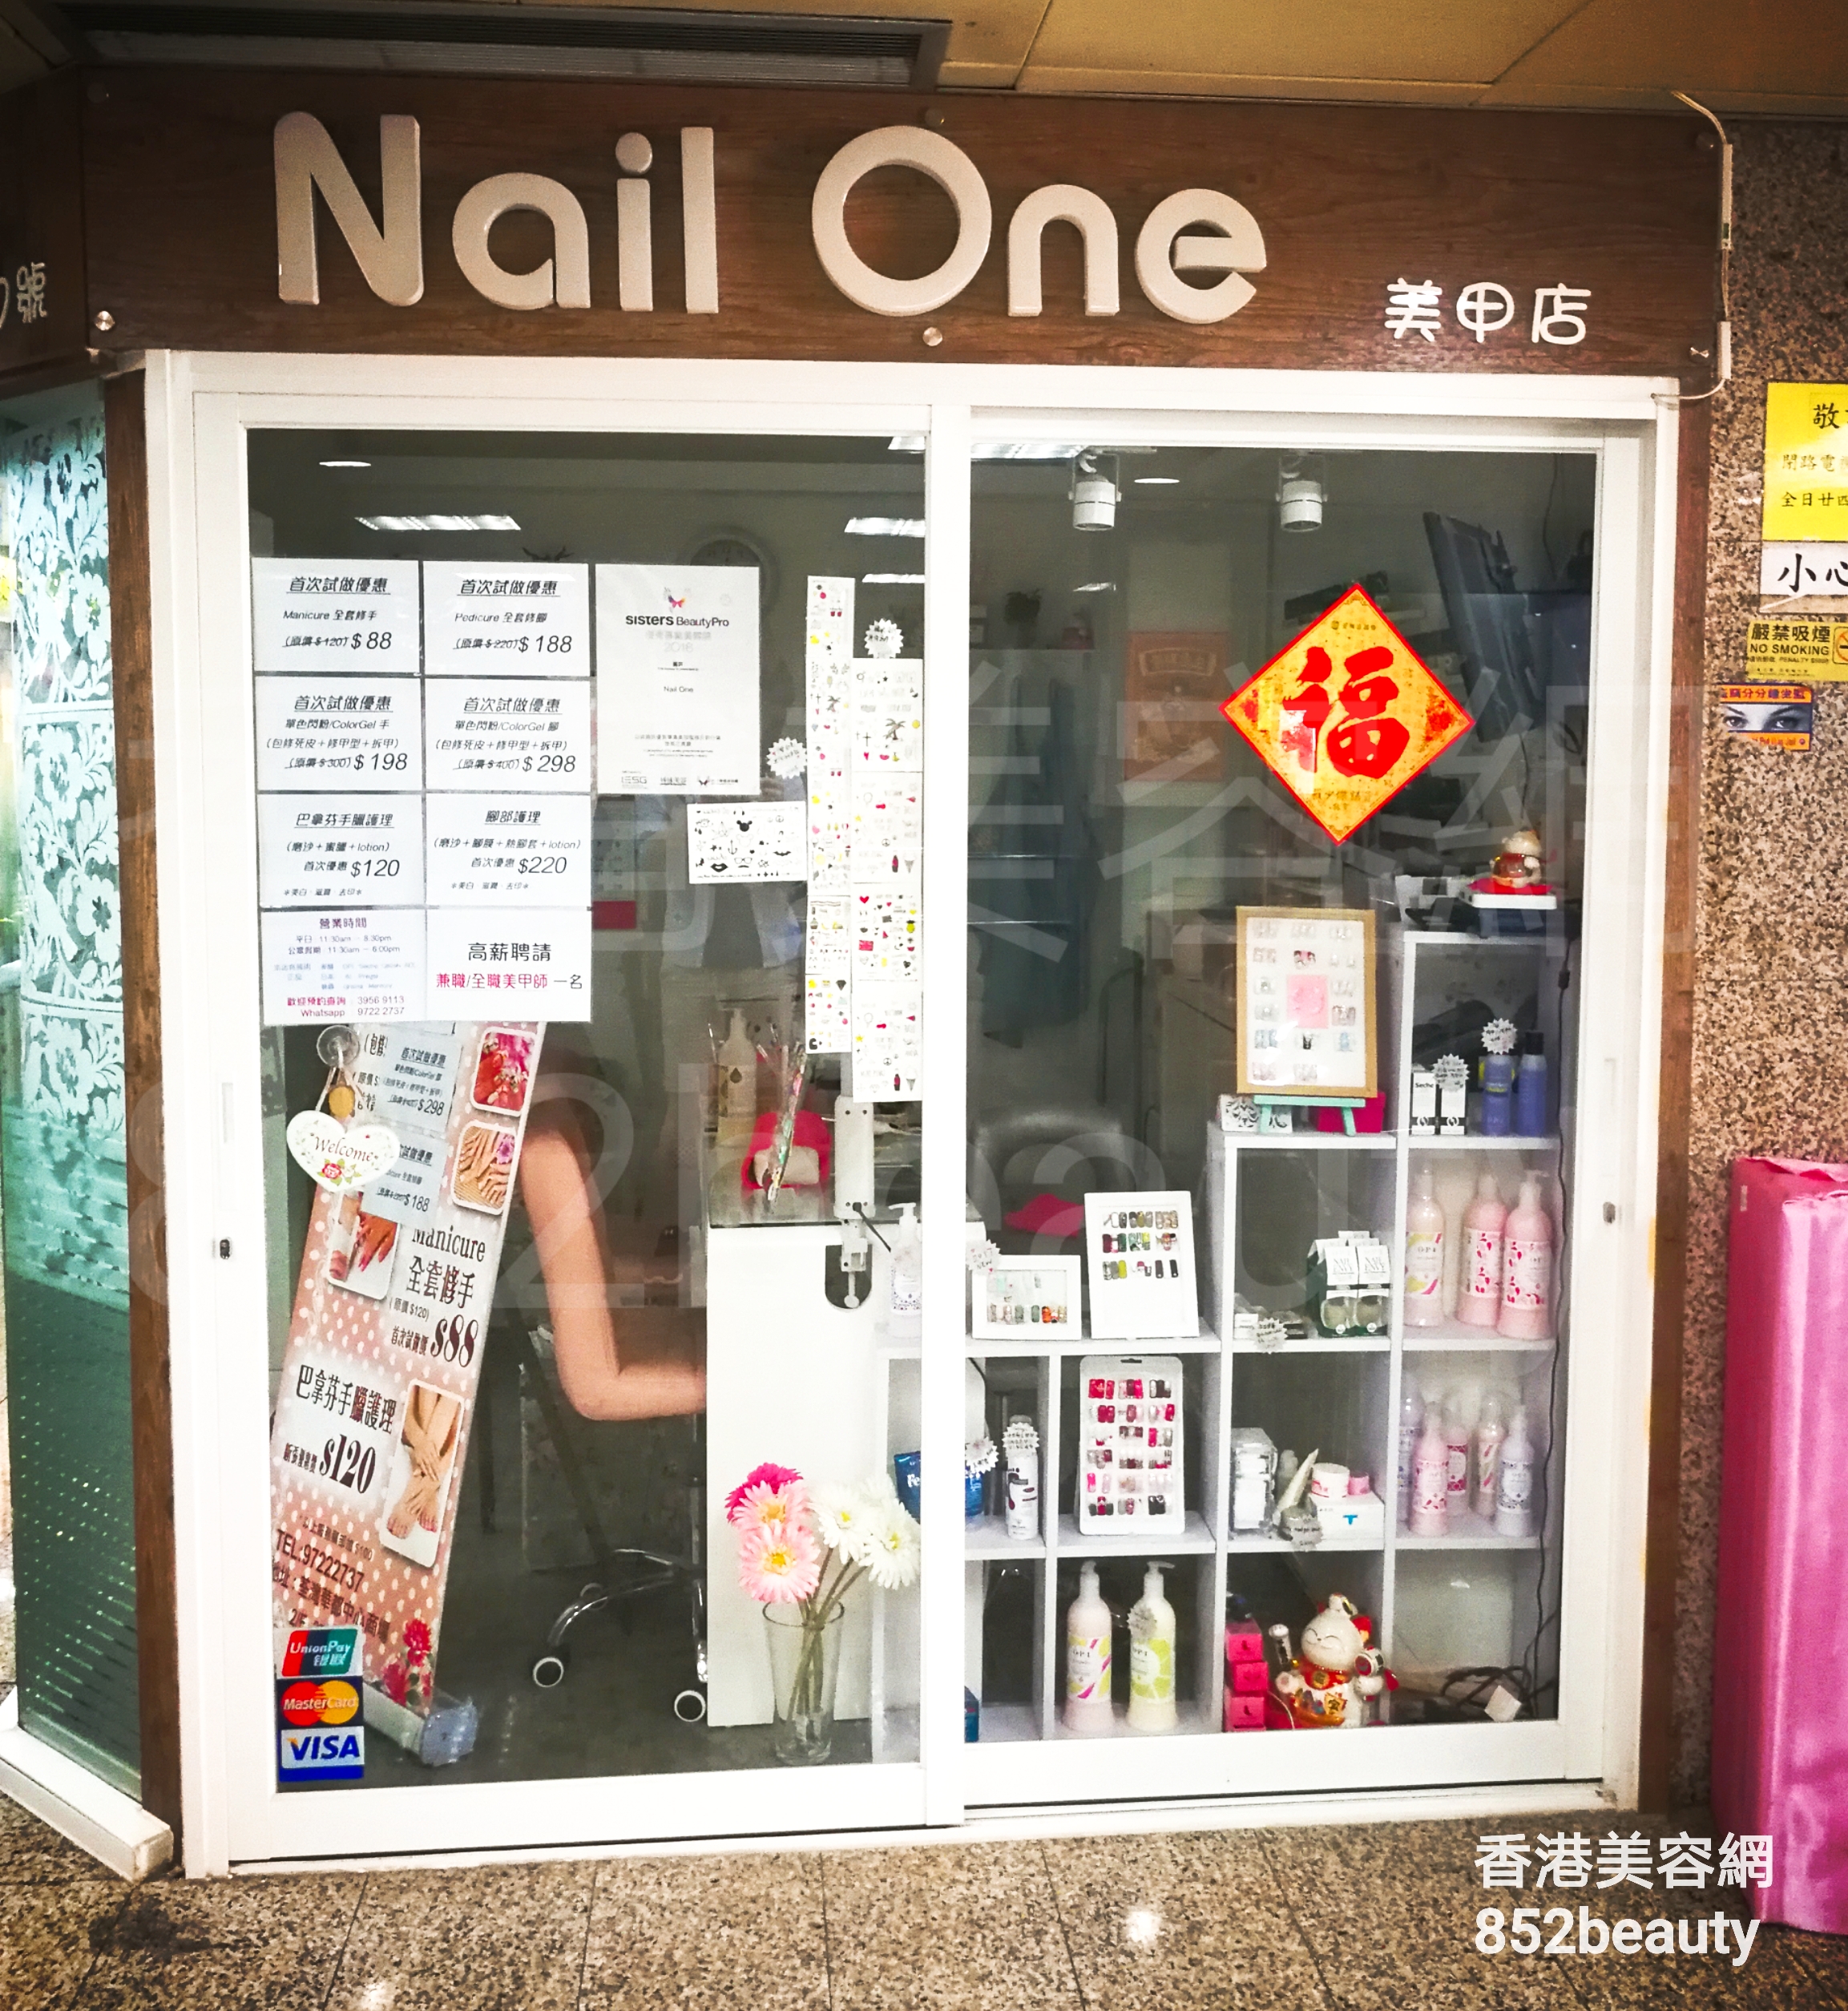 Beauty Salon: Nail One 美甲店